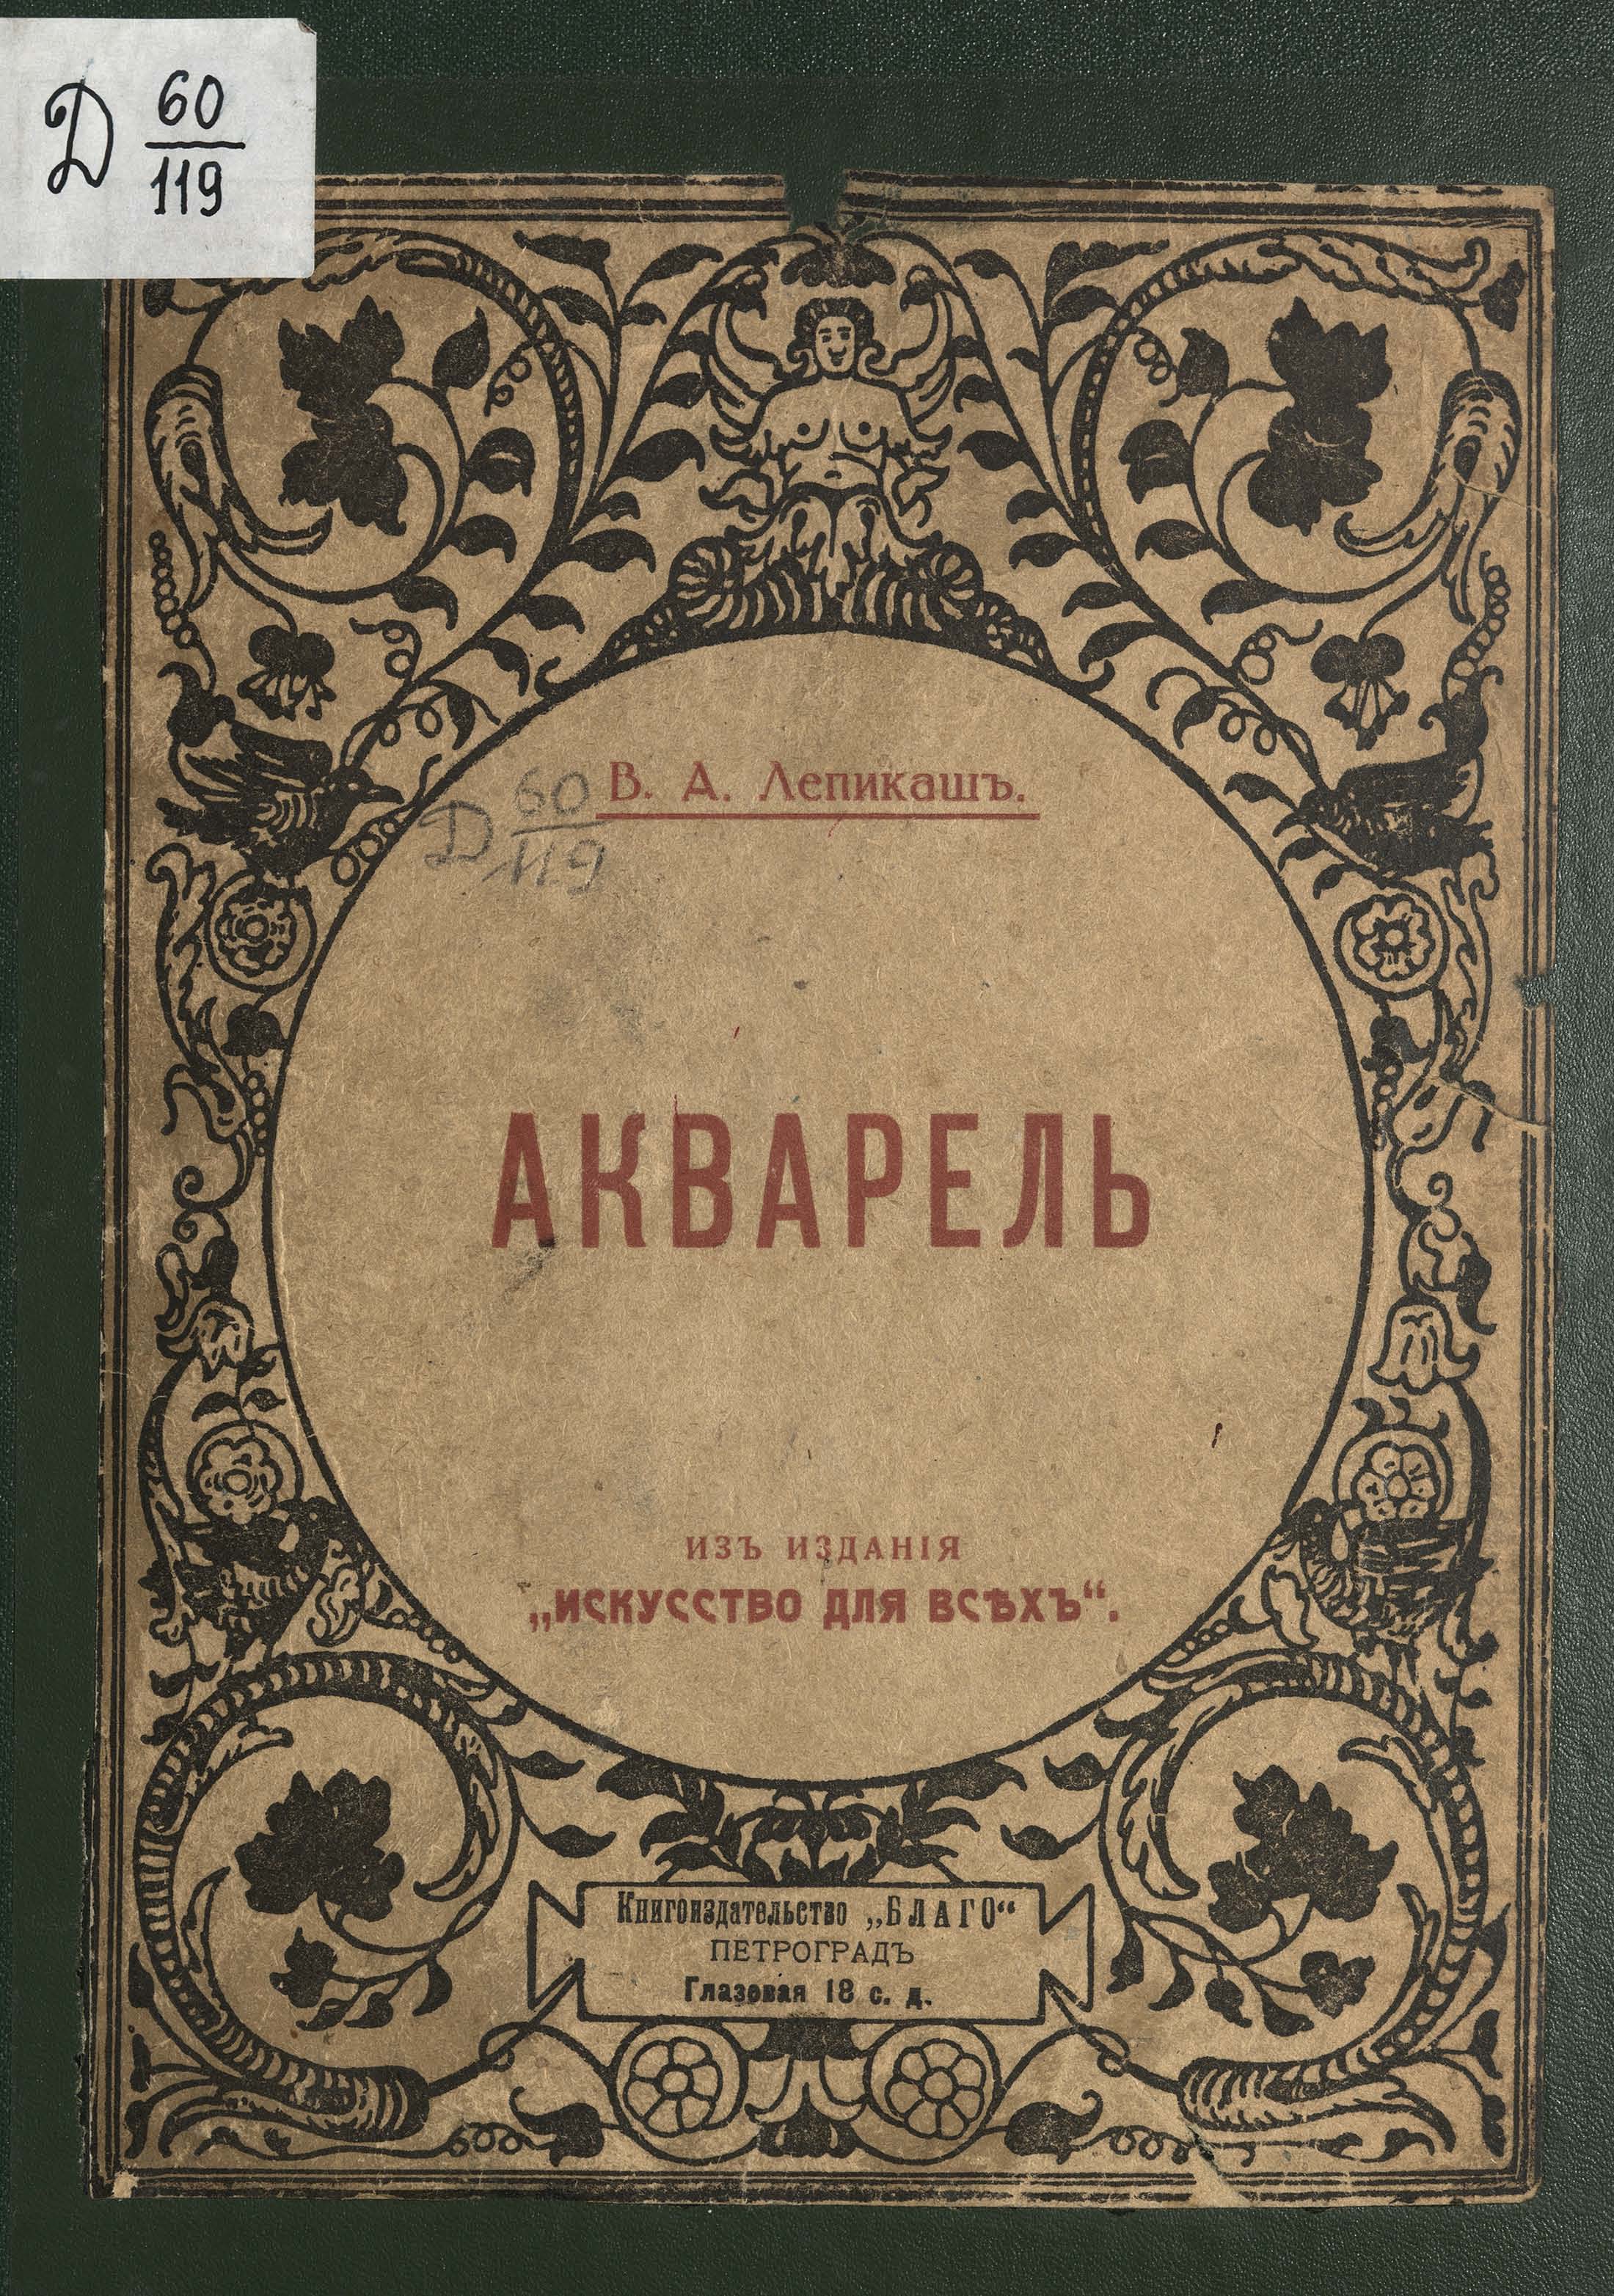 Акварель / В. А. Лепикаш. — Петроград : Кигоиздательство Благо, 1918